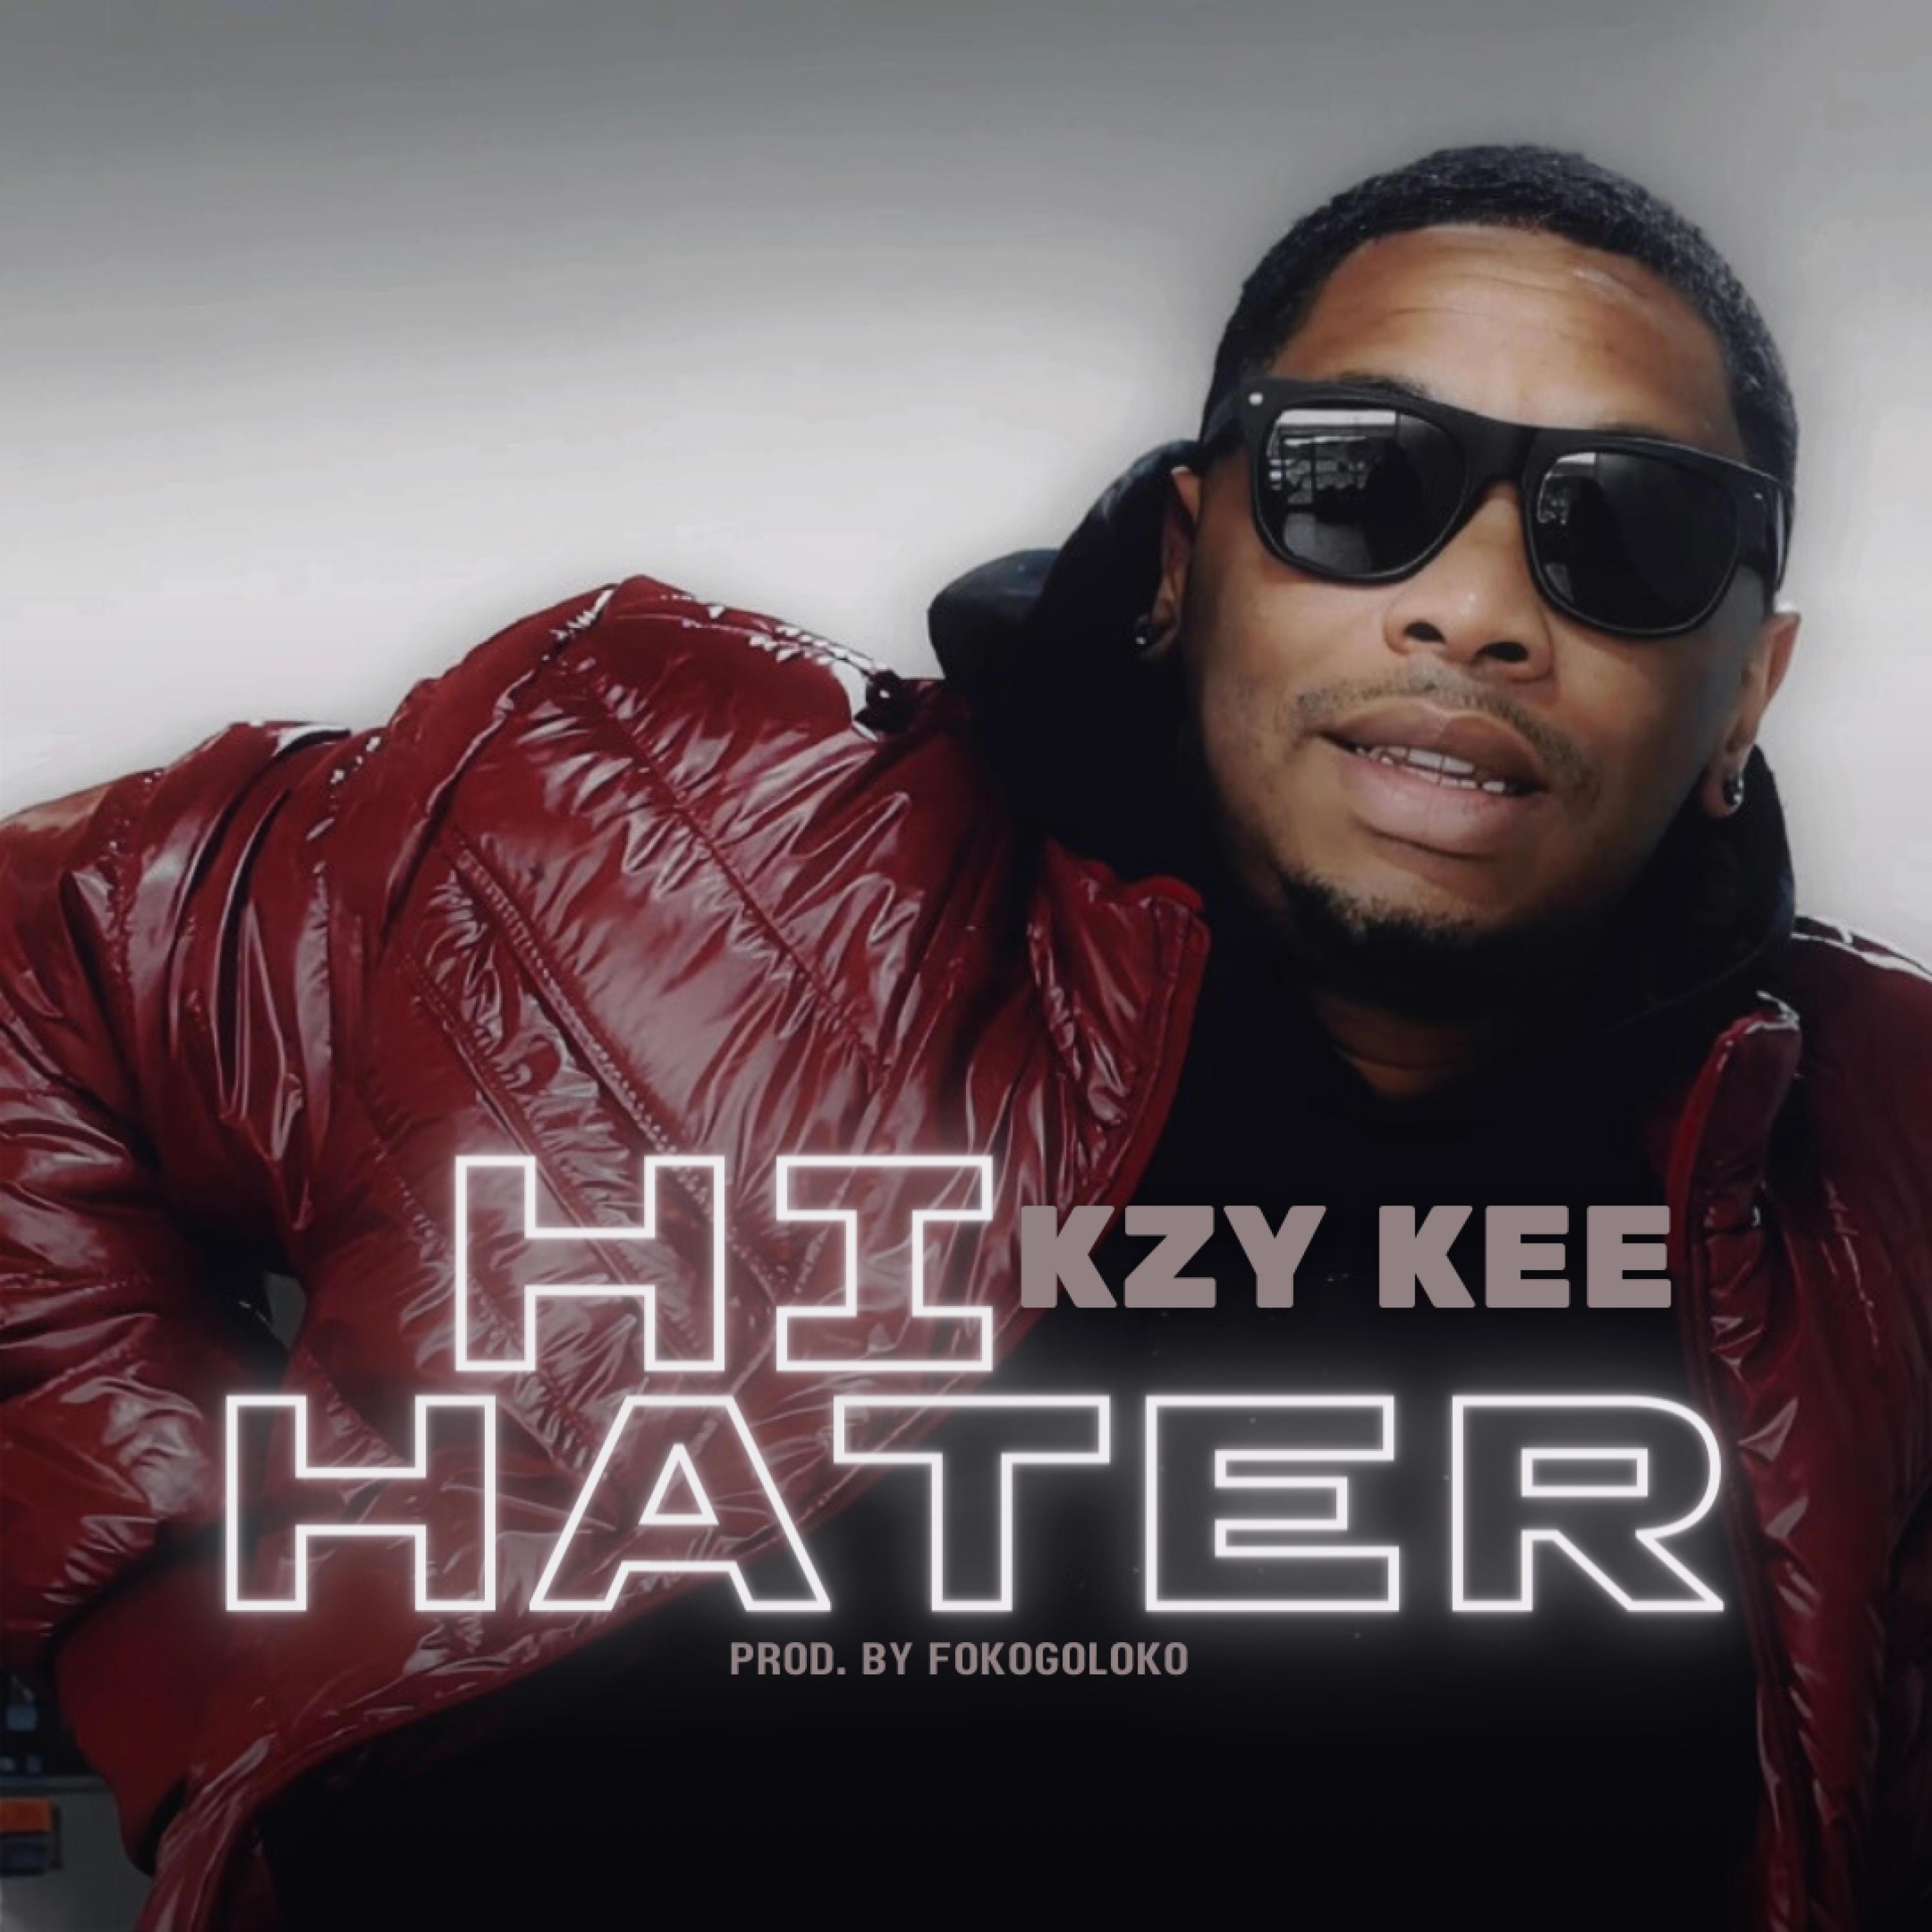 Kzy Kee - Hi Hater